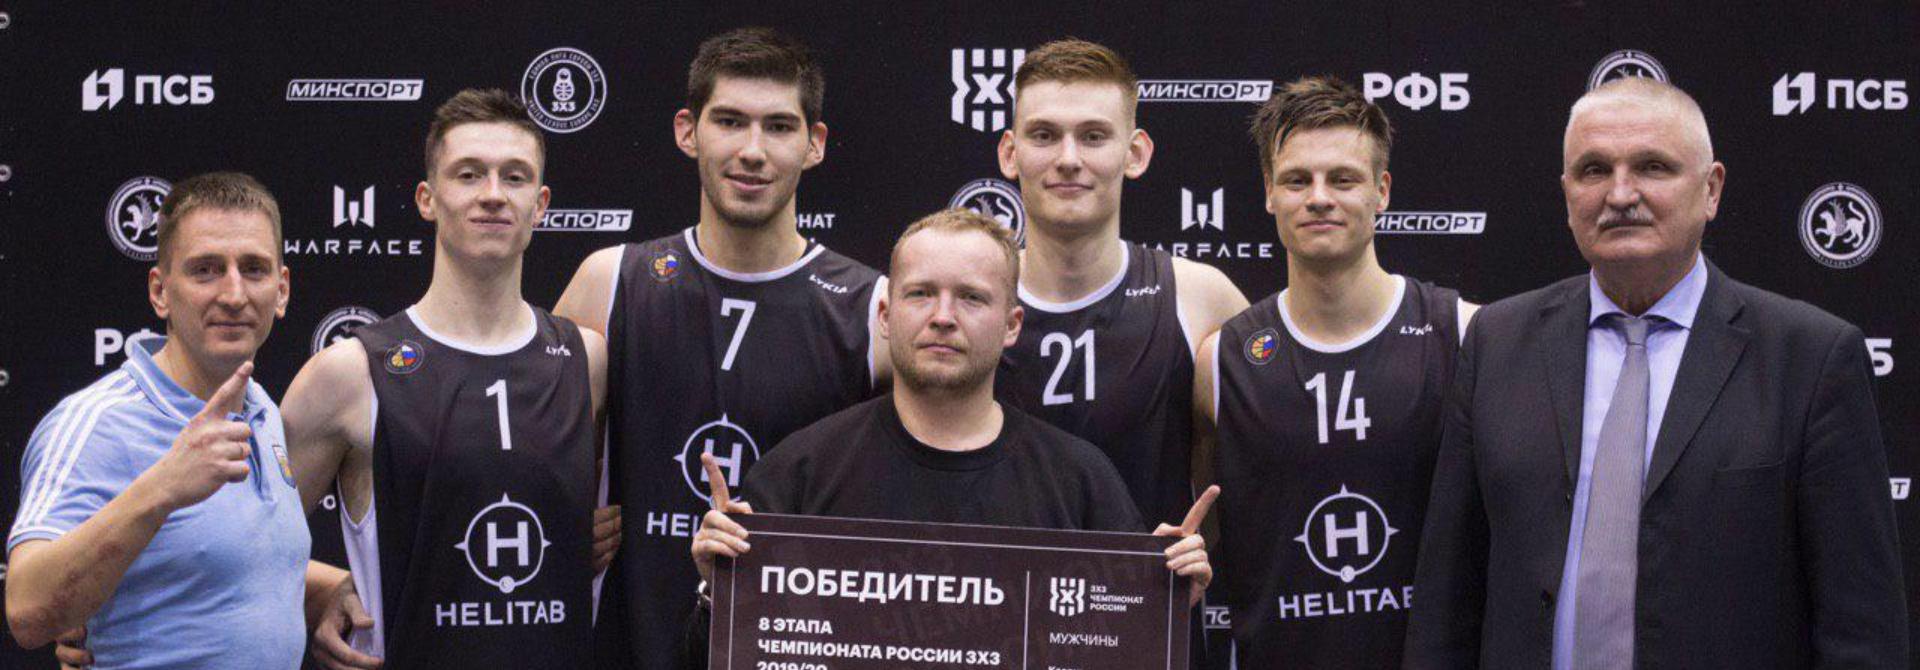 Казанская команда выиграла 8 этап чемпионата России по баскетболу 3х3 